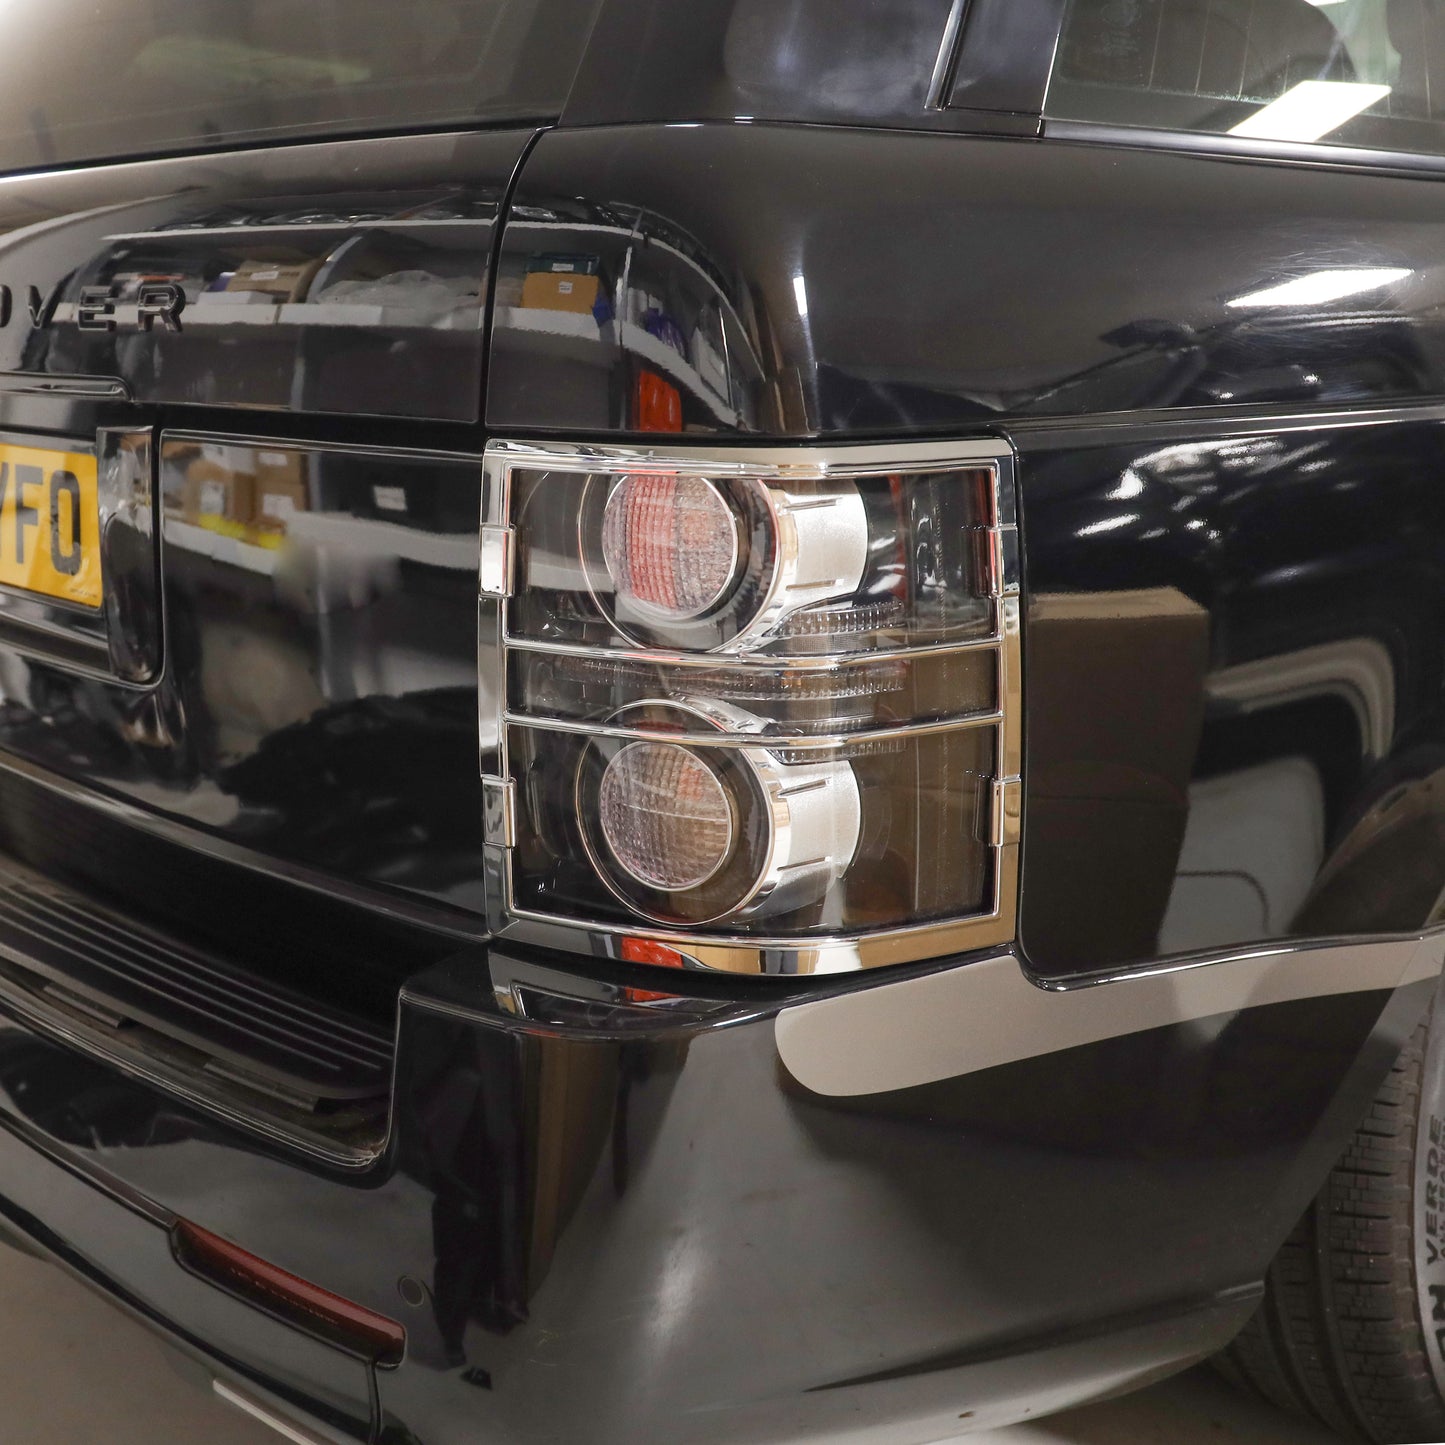 Rear Light Covers for Range Rover L322 - Chrome